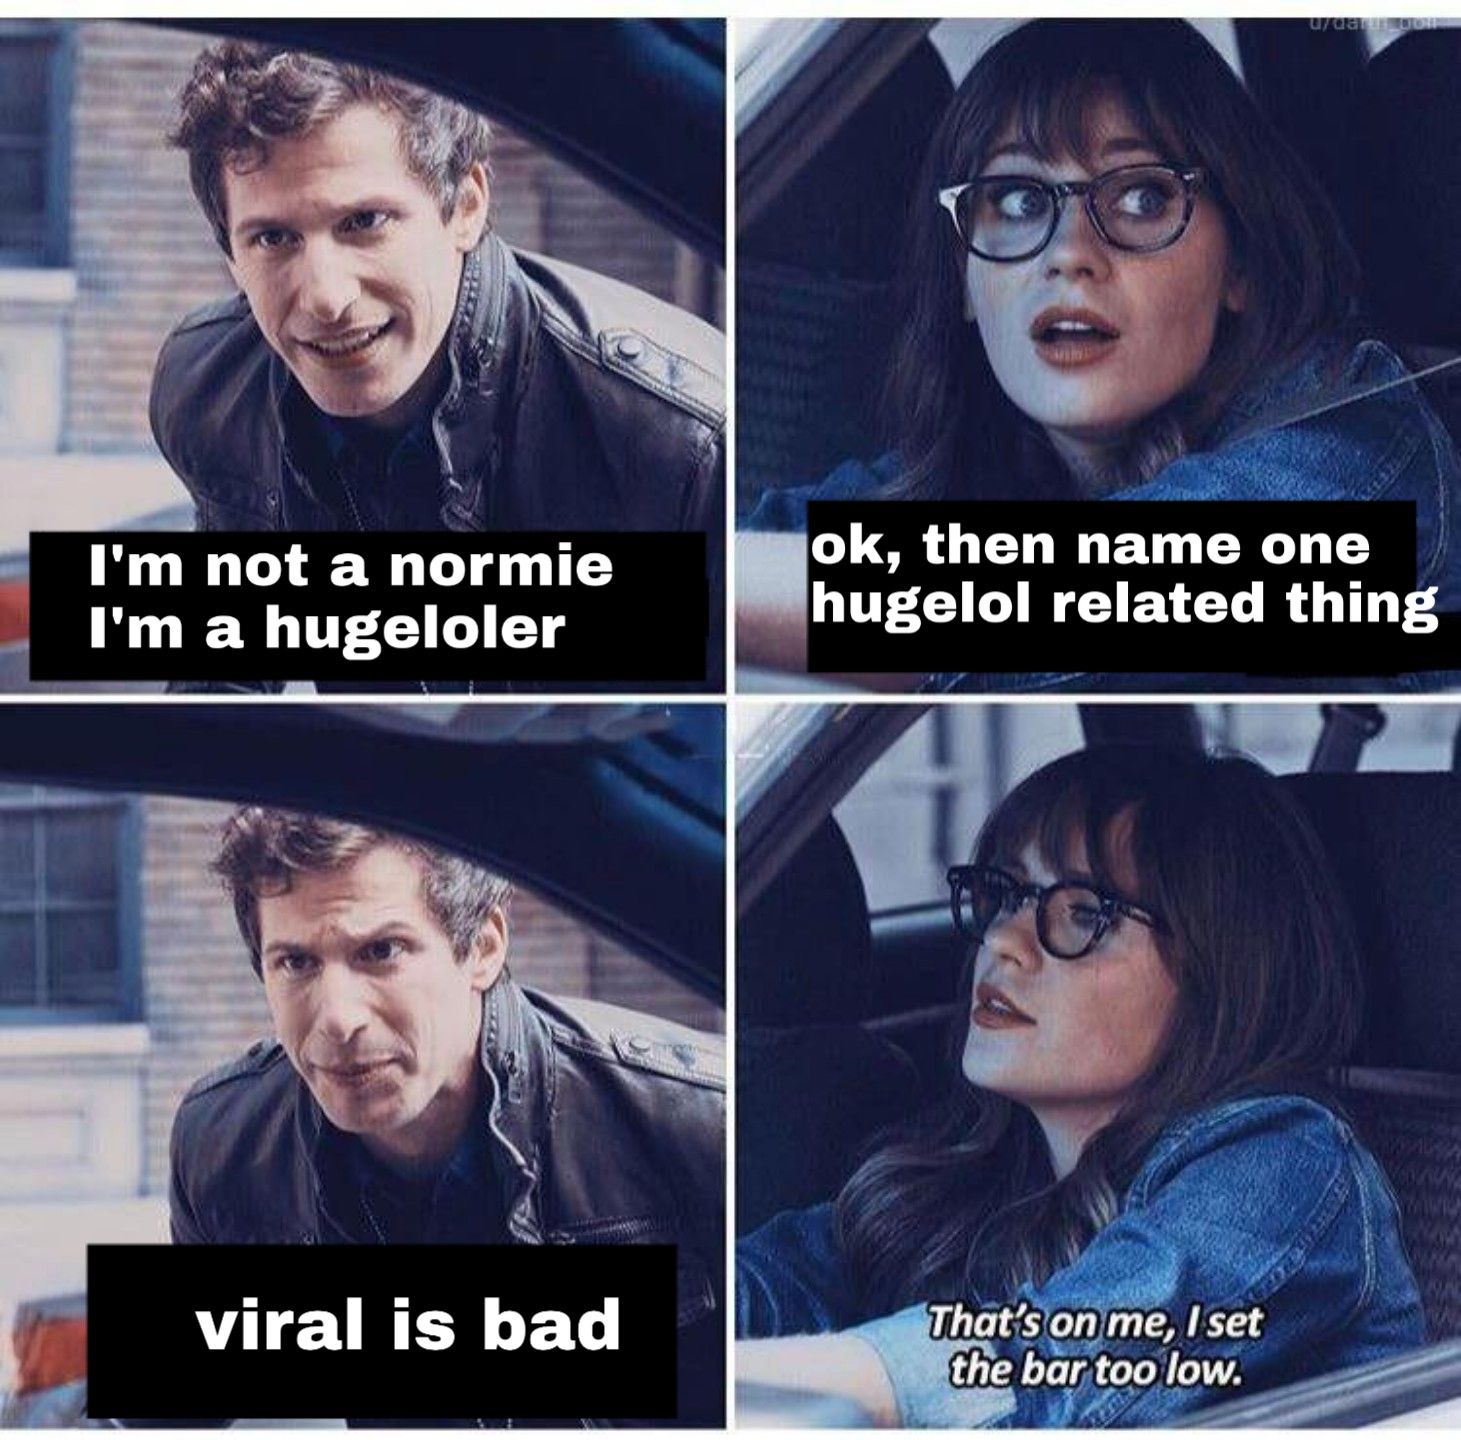 Viral bad